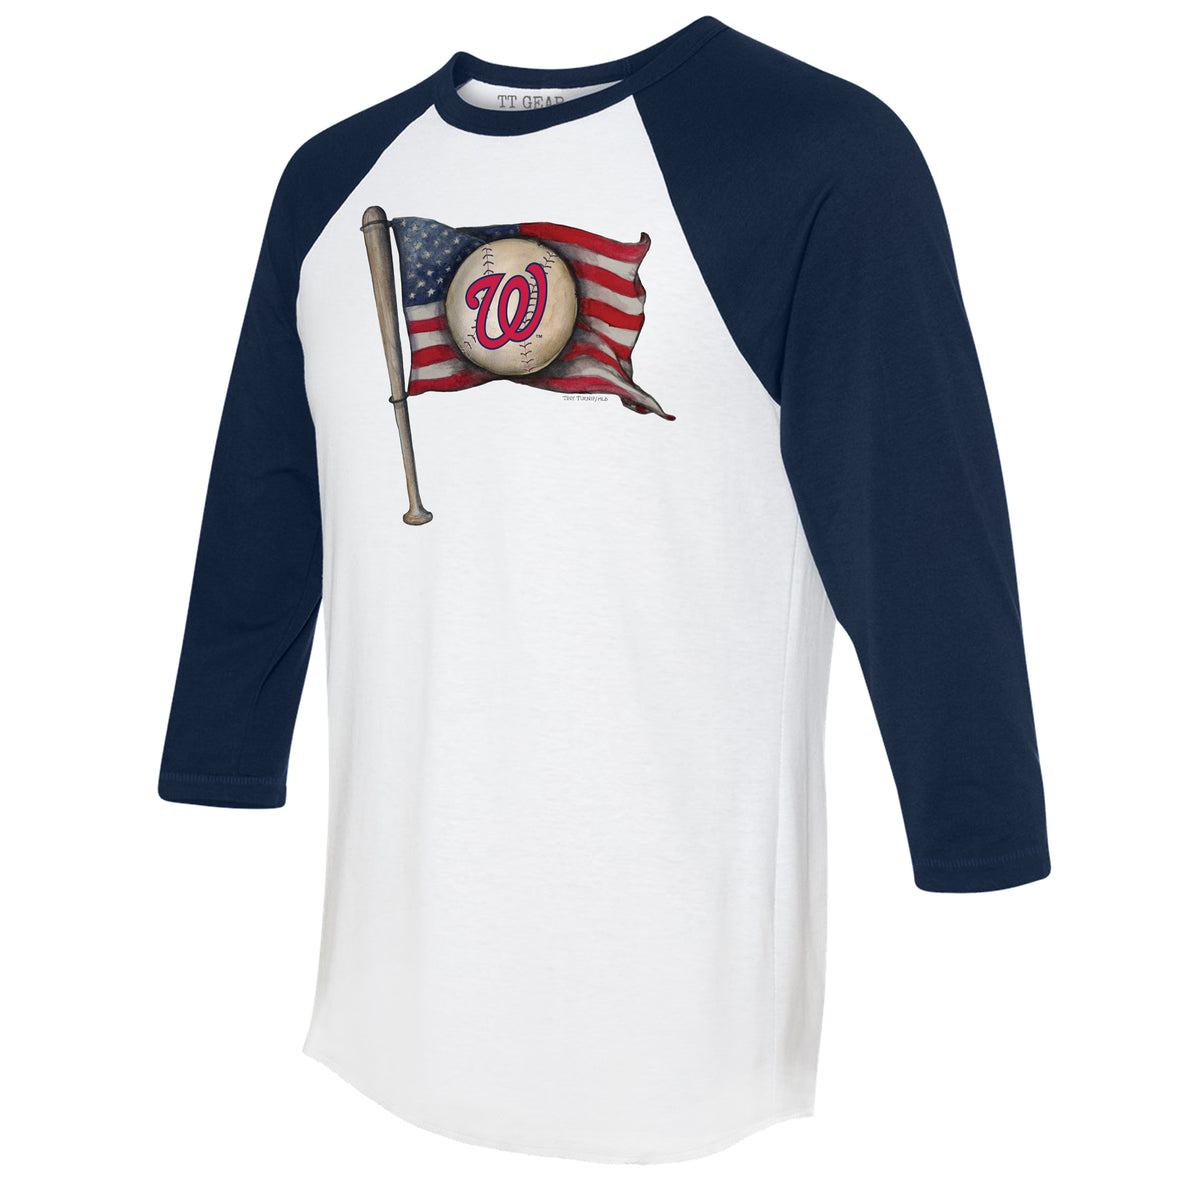 Nationals Baseball T-shirt  Baseball tshirts, Shirt shop, Baseball t